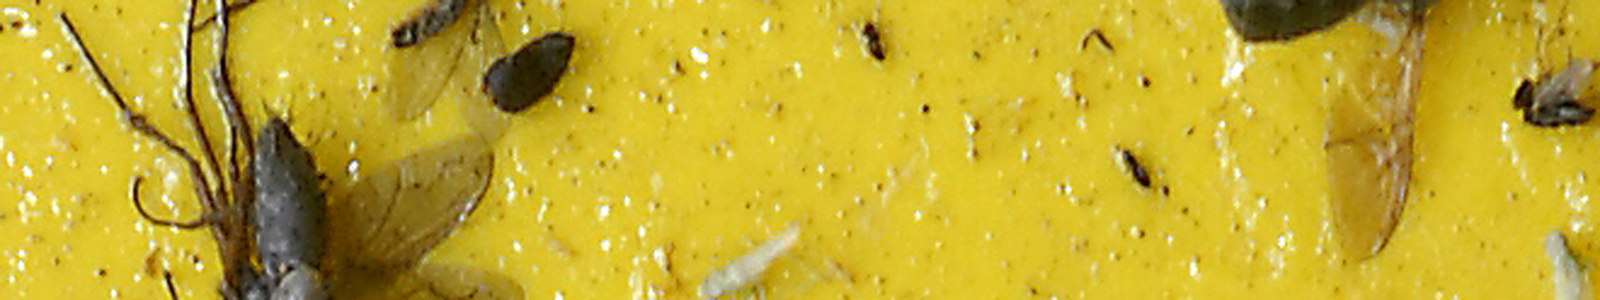 Insekten auf Gelbtafel ©Feuerbach